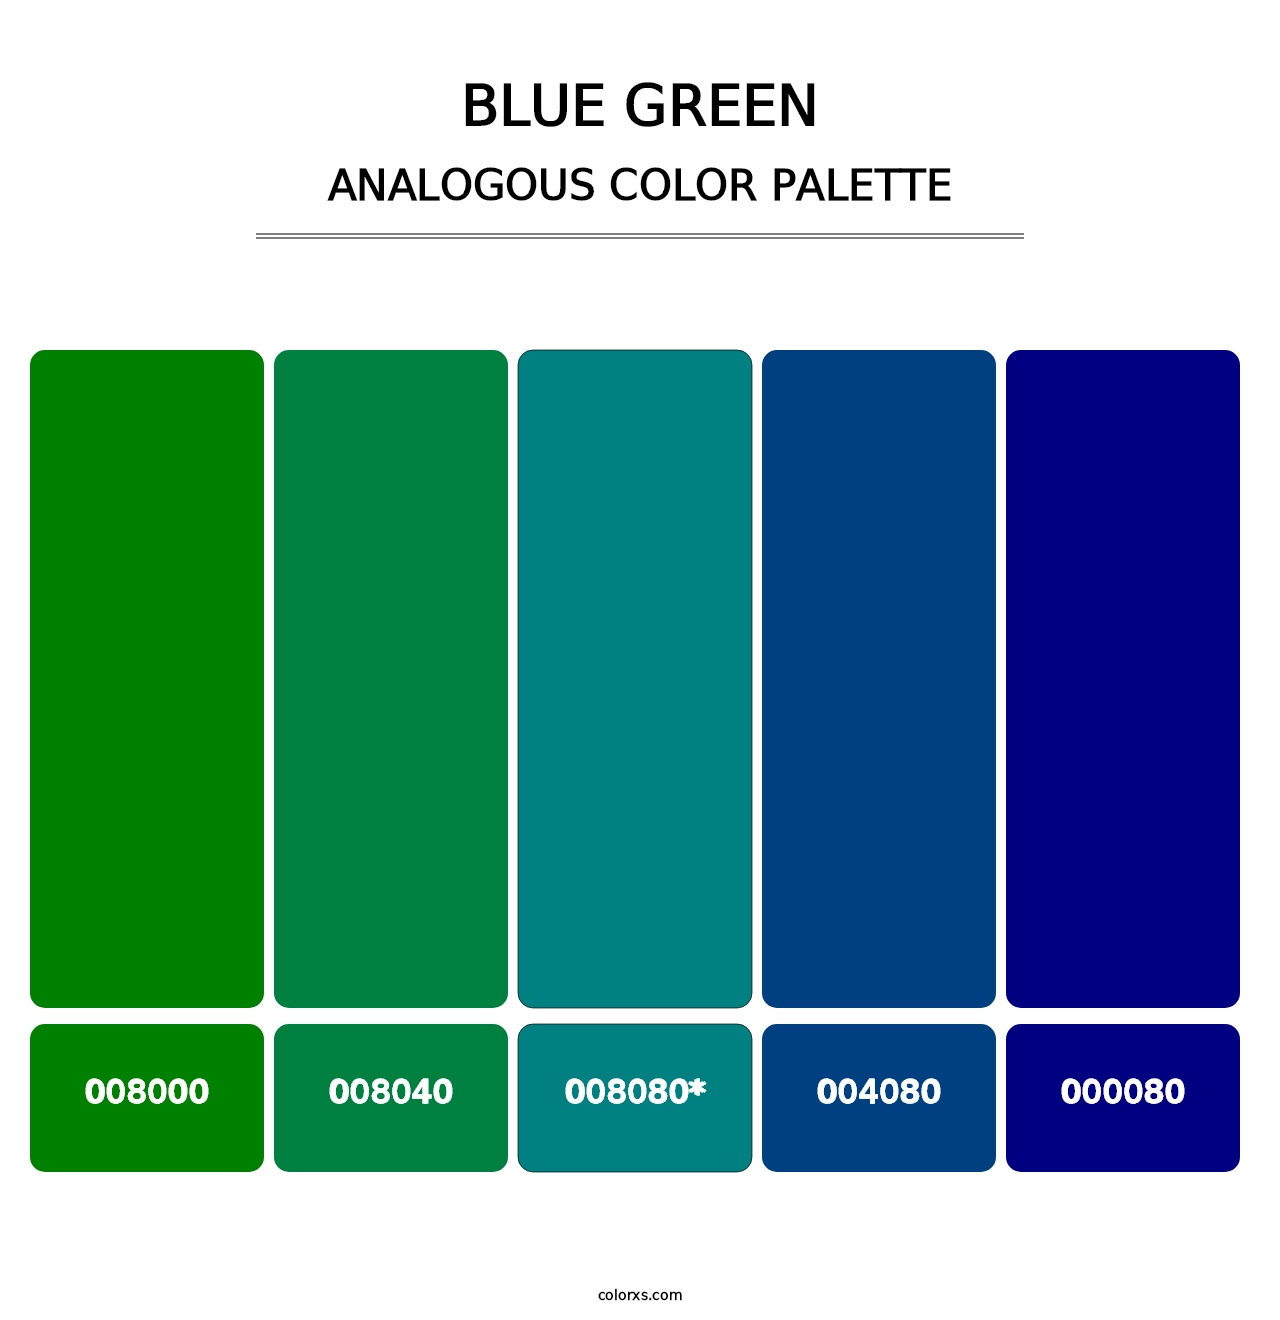 Blue Green - Analogous Color Palette